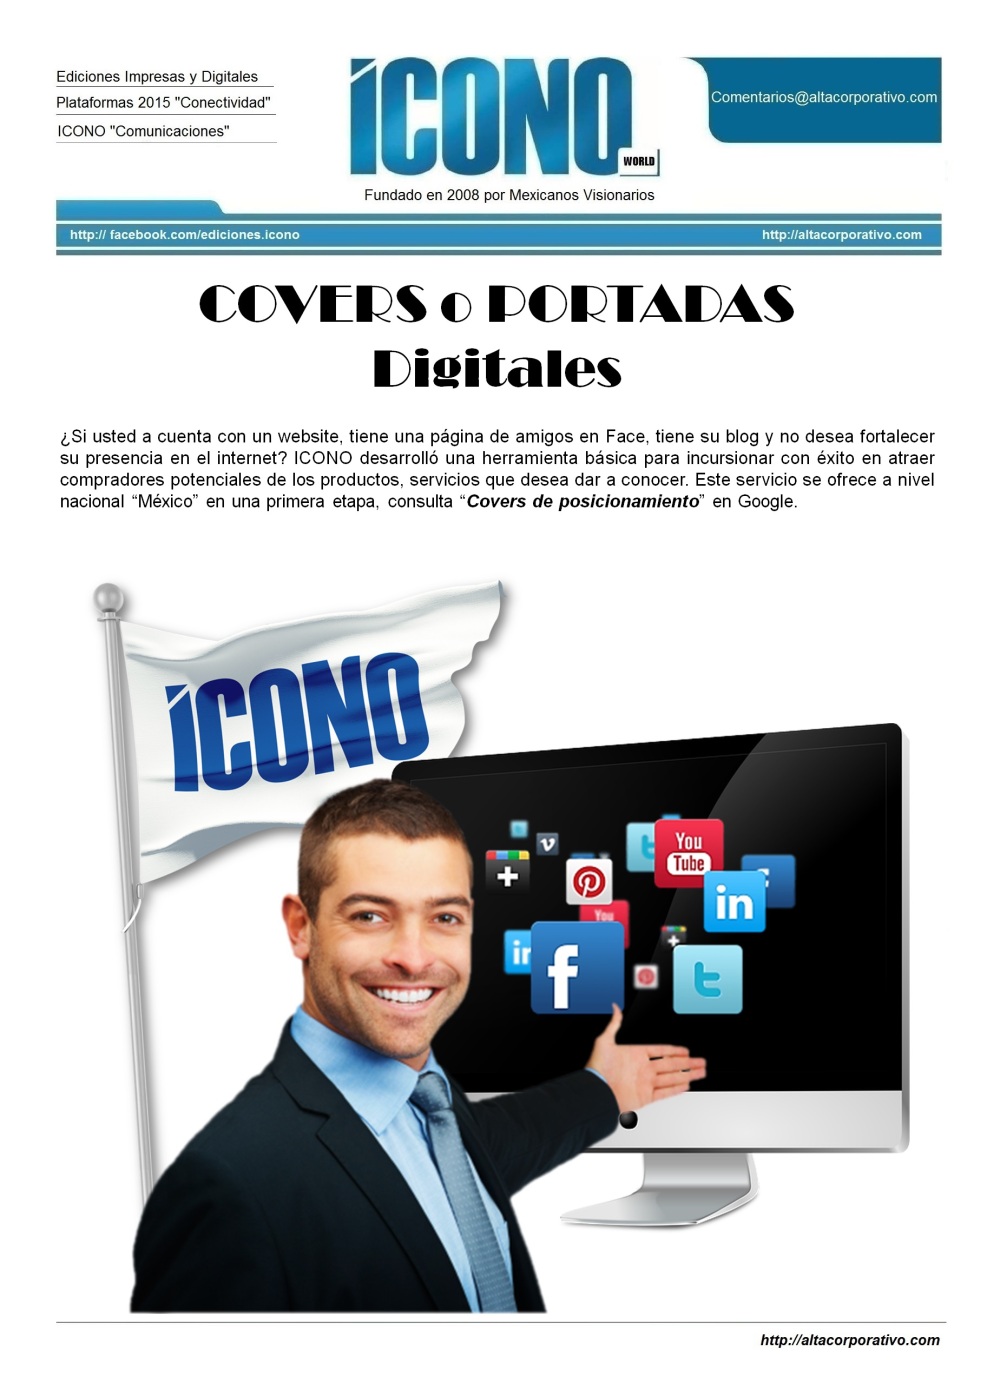 COVERS DE ICONO